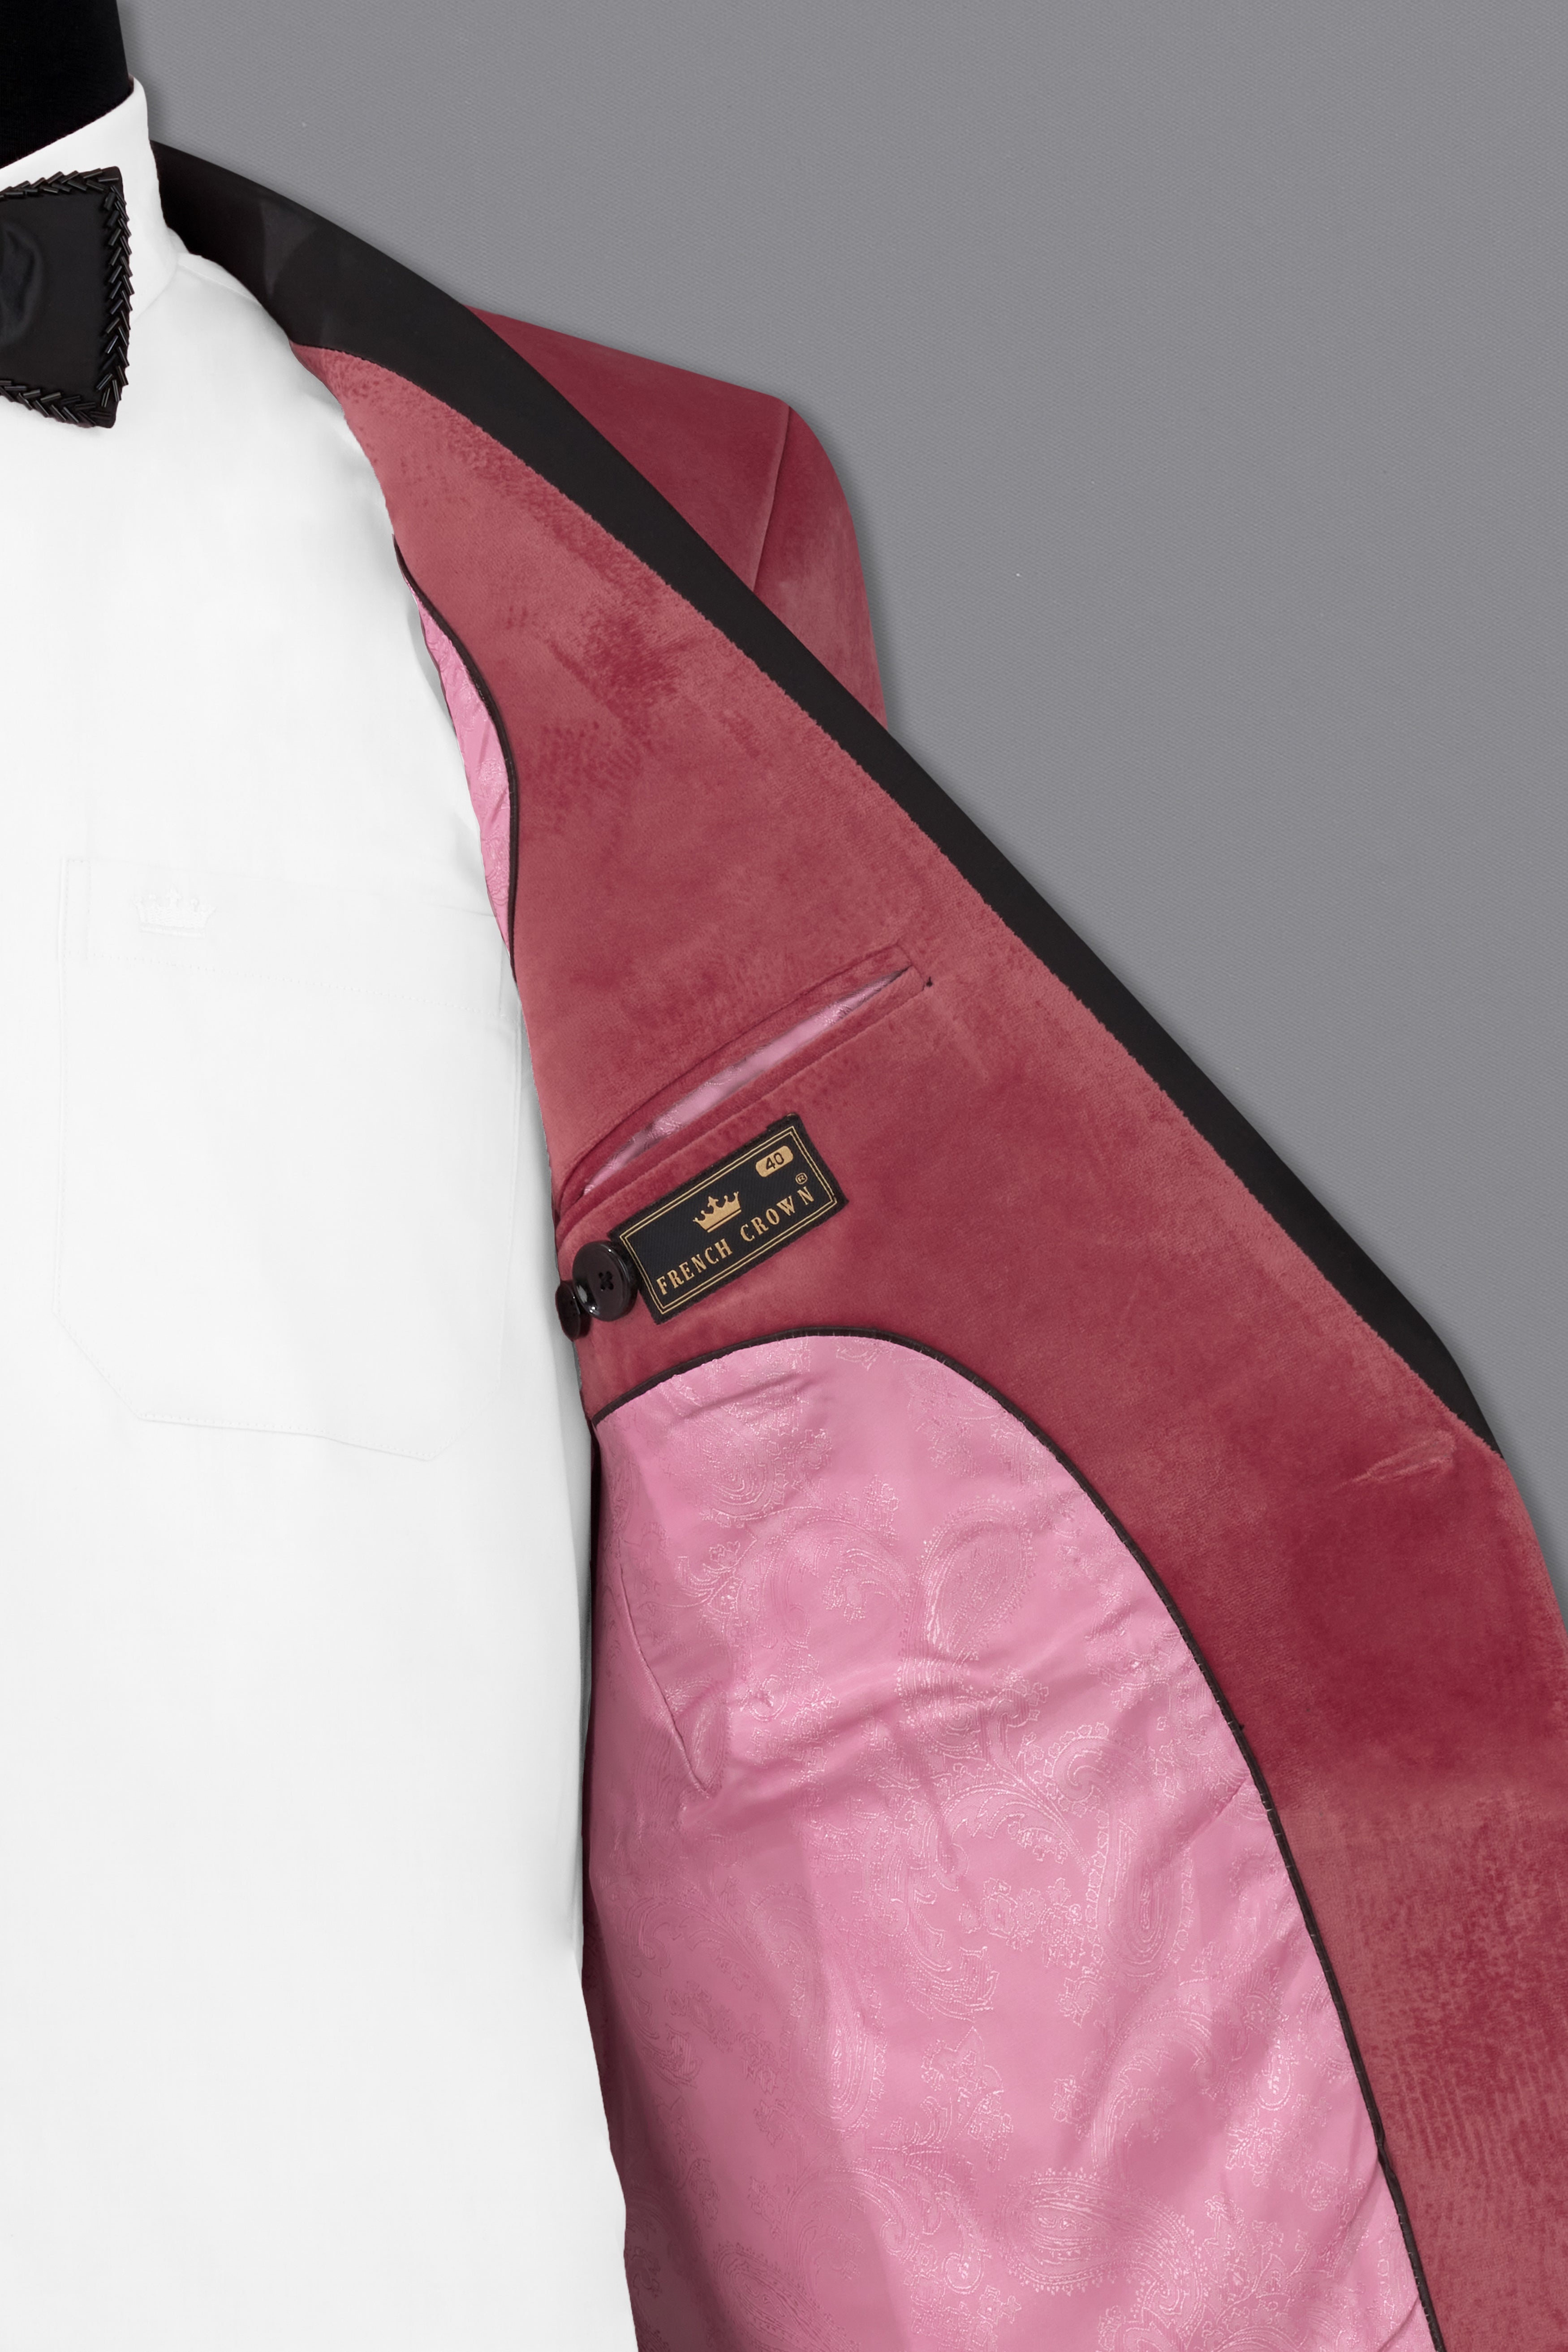 Rose Taupe Pink Velvet Tuxedo Designer Blazer